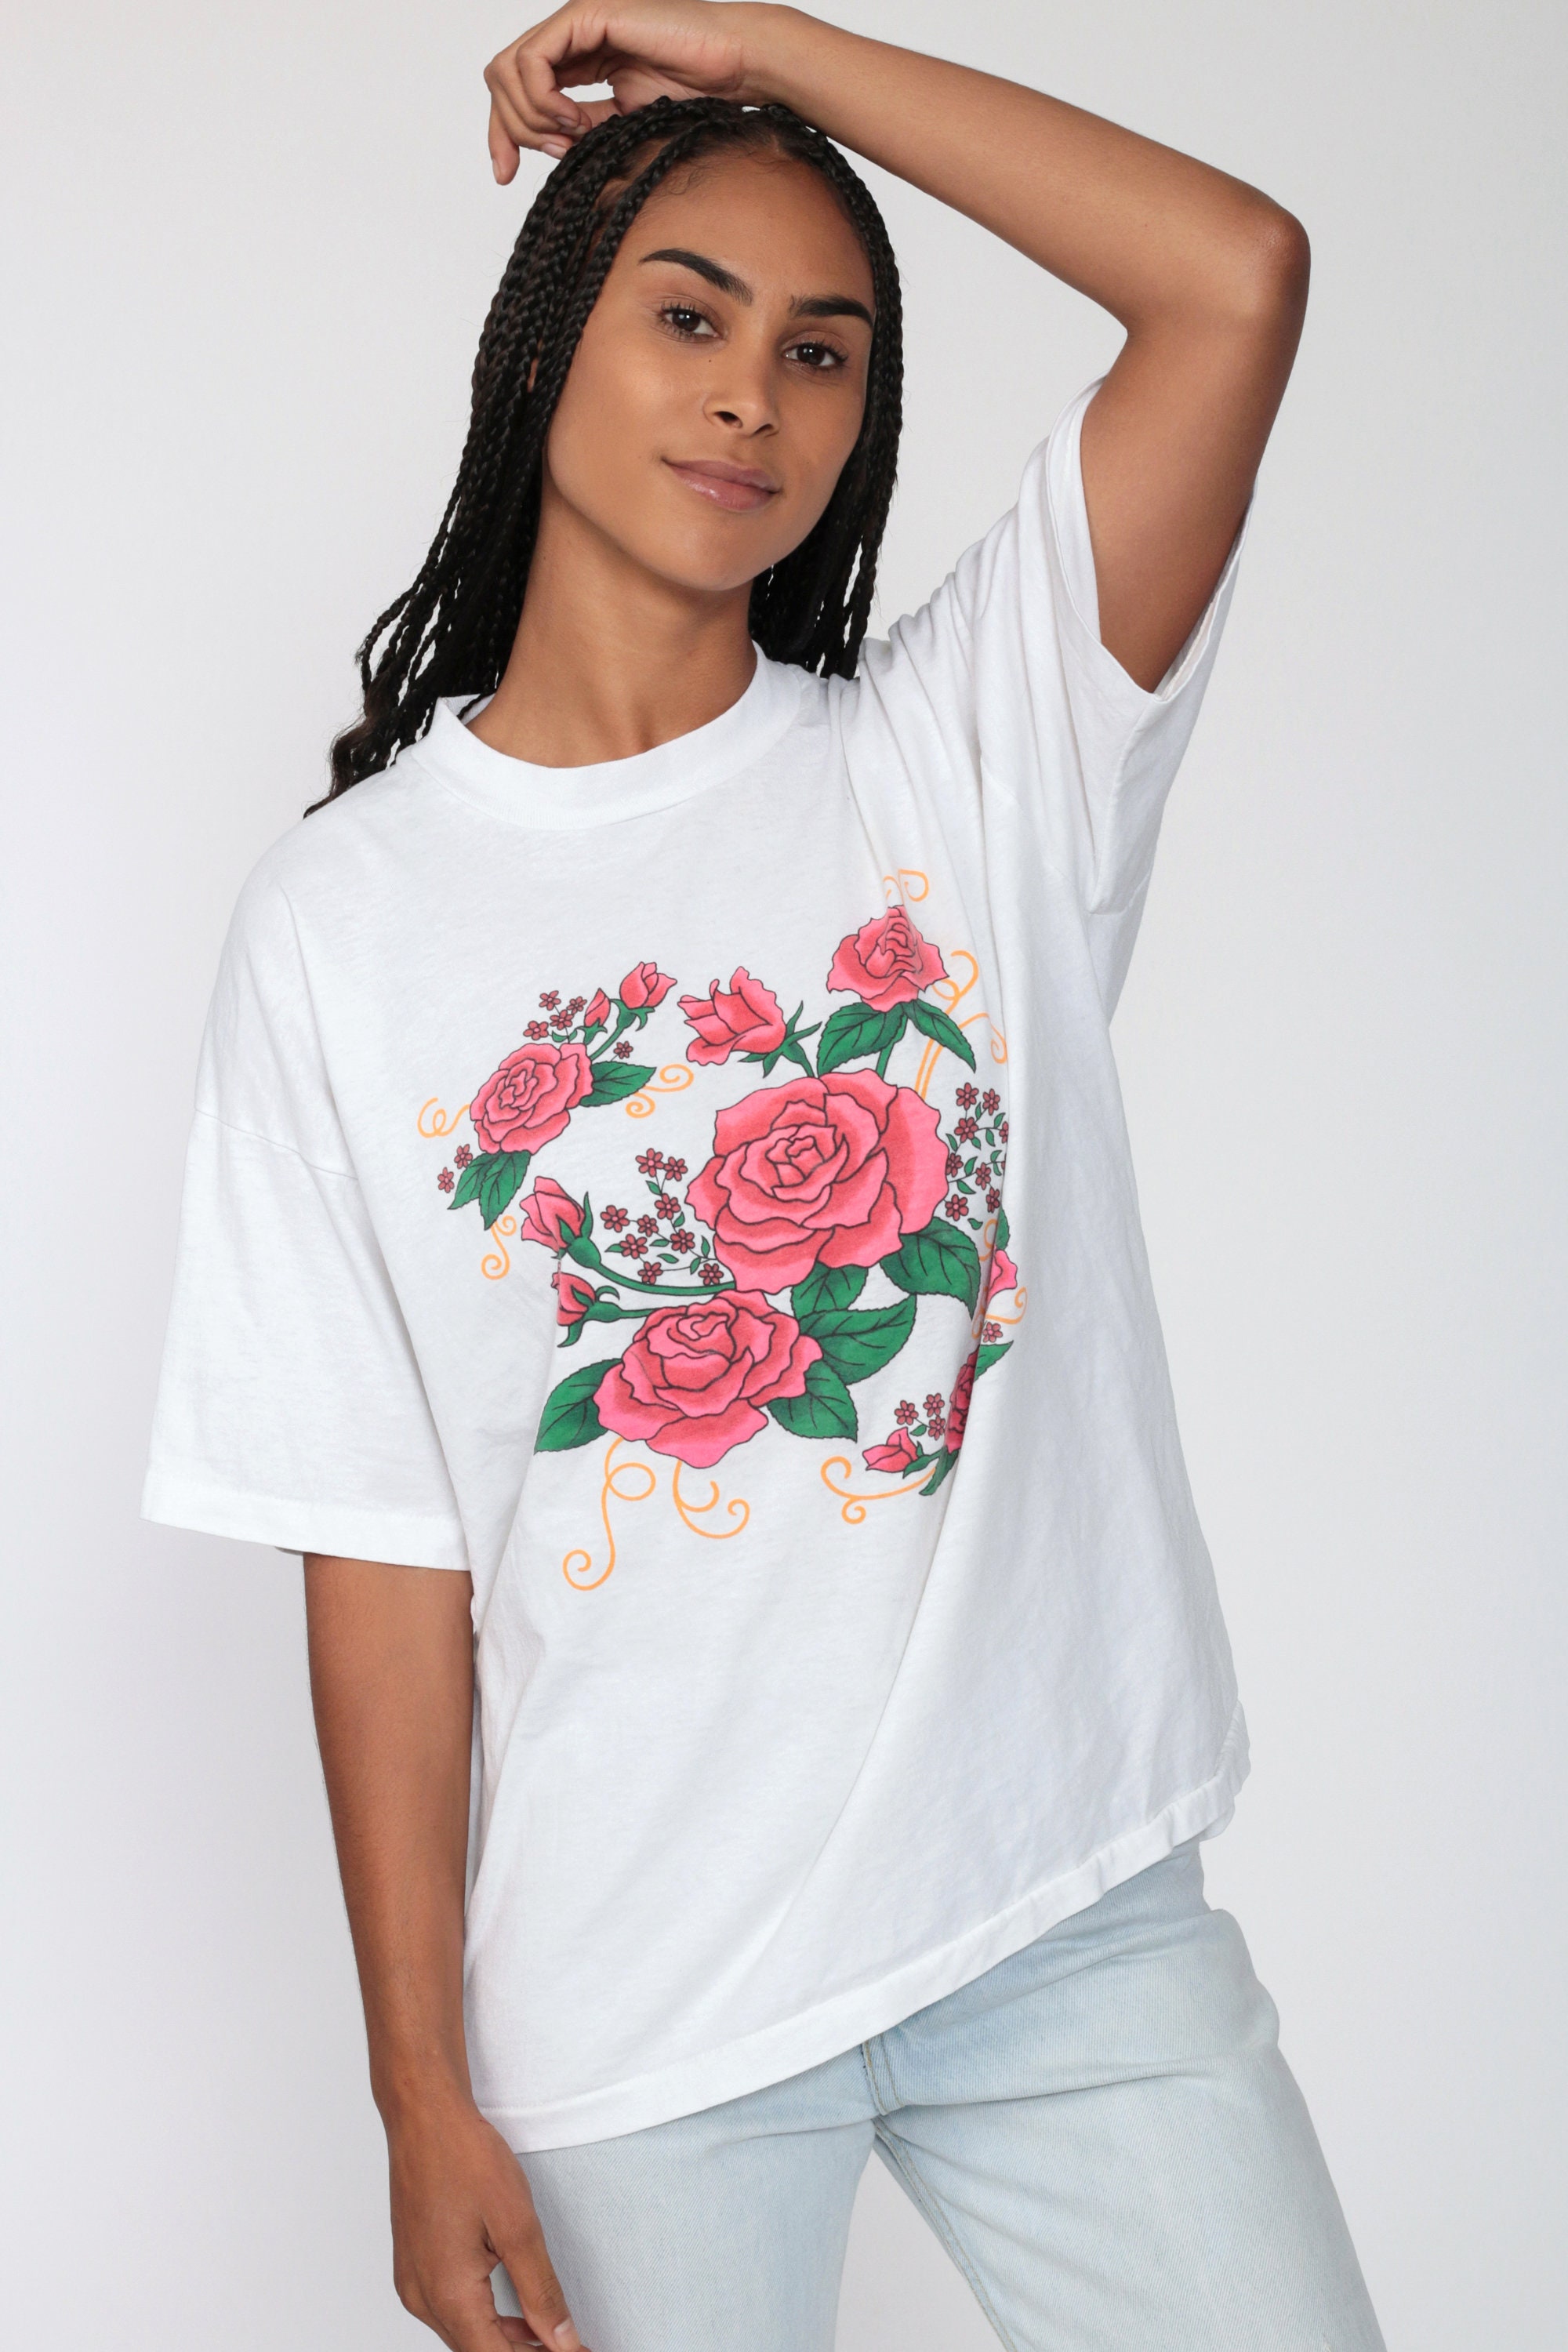 Floral Rose Shirt 90s Retro Tshirt Short Sleeve Tshirt Graphic | Etsy